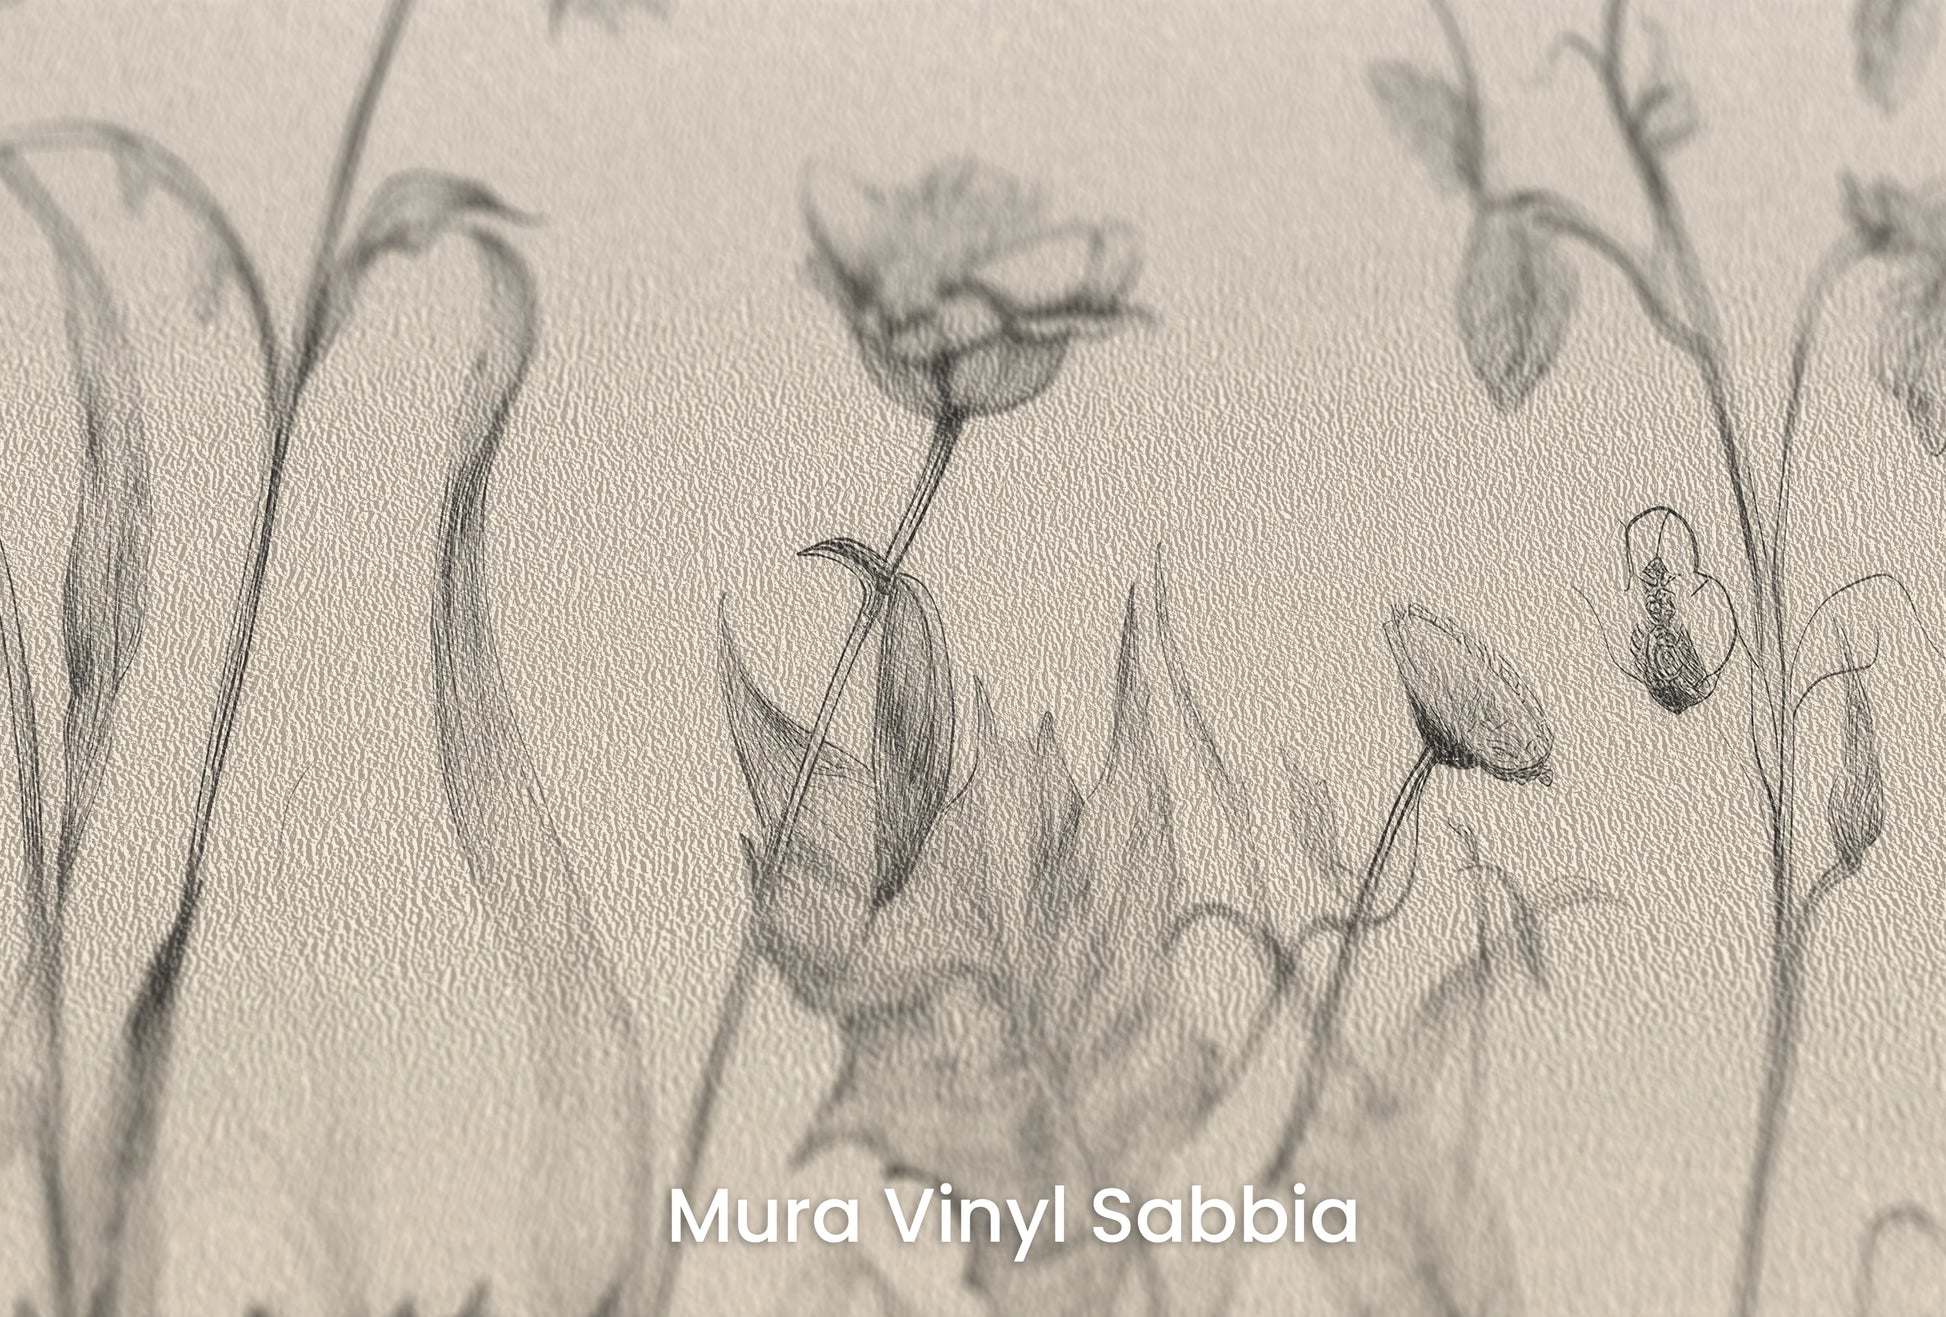 Zbliżenie na artystyczną fototapetę o nazwie Floral Harmony #2 na podłożu Mura Vinyl Sabbia struktura grubego ziarna piasku.